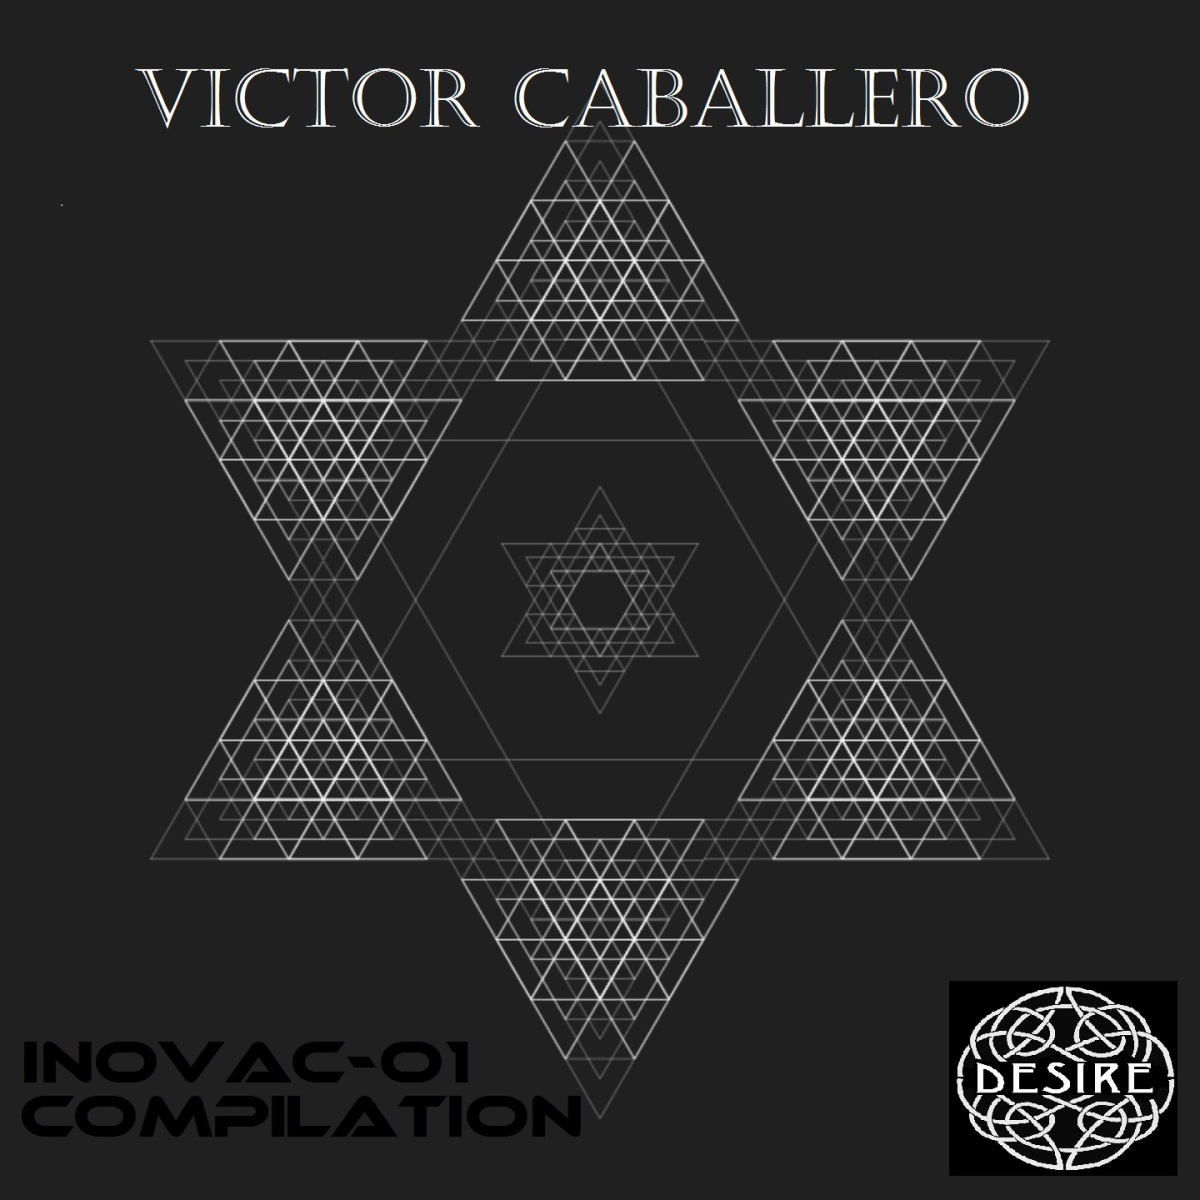 VICTOR CABALLERO RELEASE A NEW ALBUM